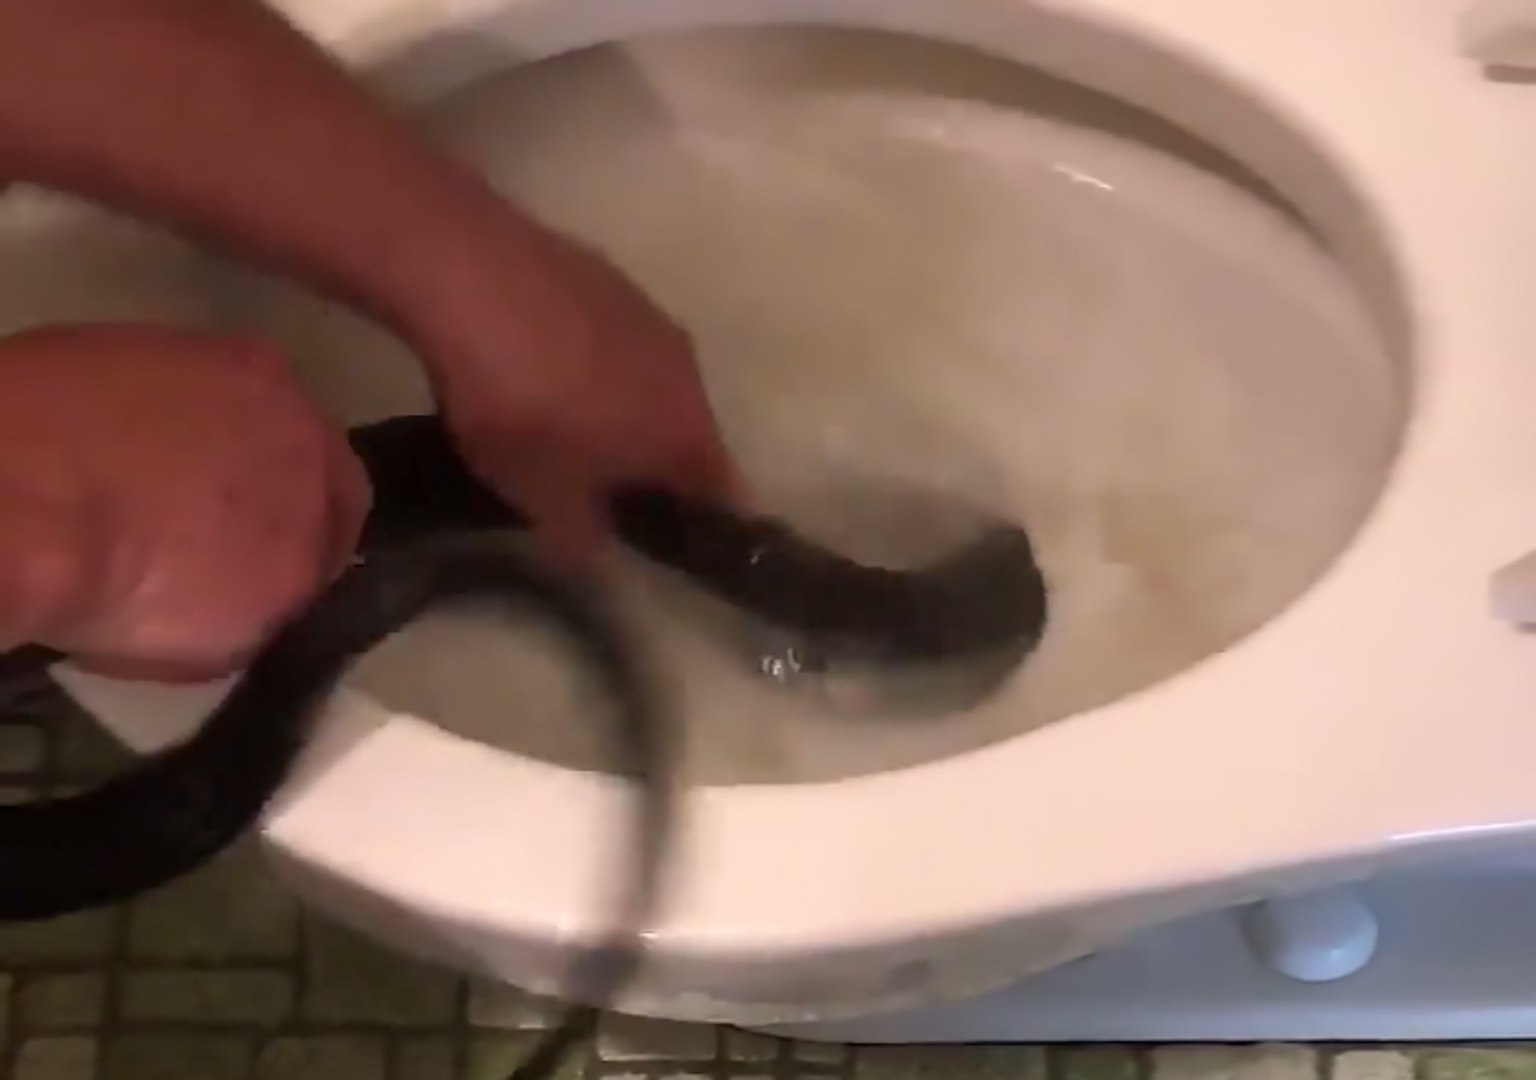 Il aide son voisin en extirpant un énorme serpent des toilettes - Vidéo  Dailymotion